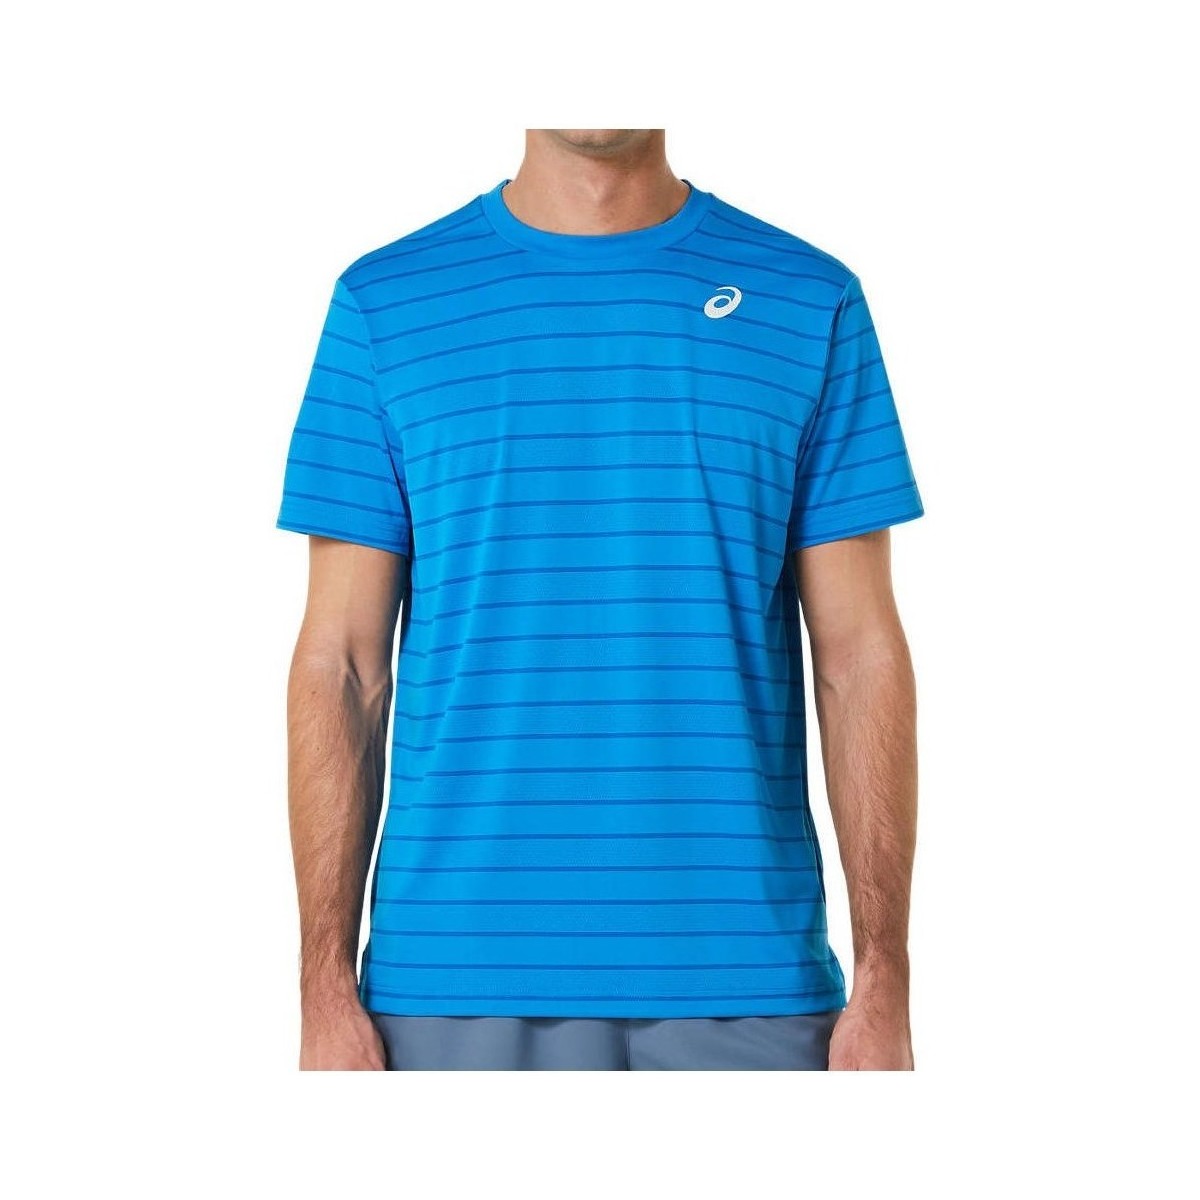 Kleidung Herren T-Shirts Asics Court Stripe Blau